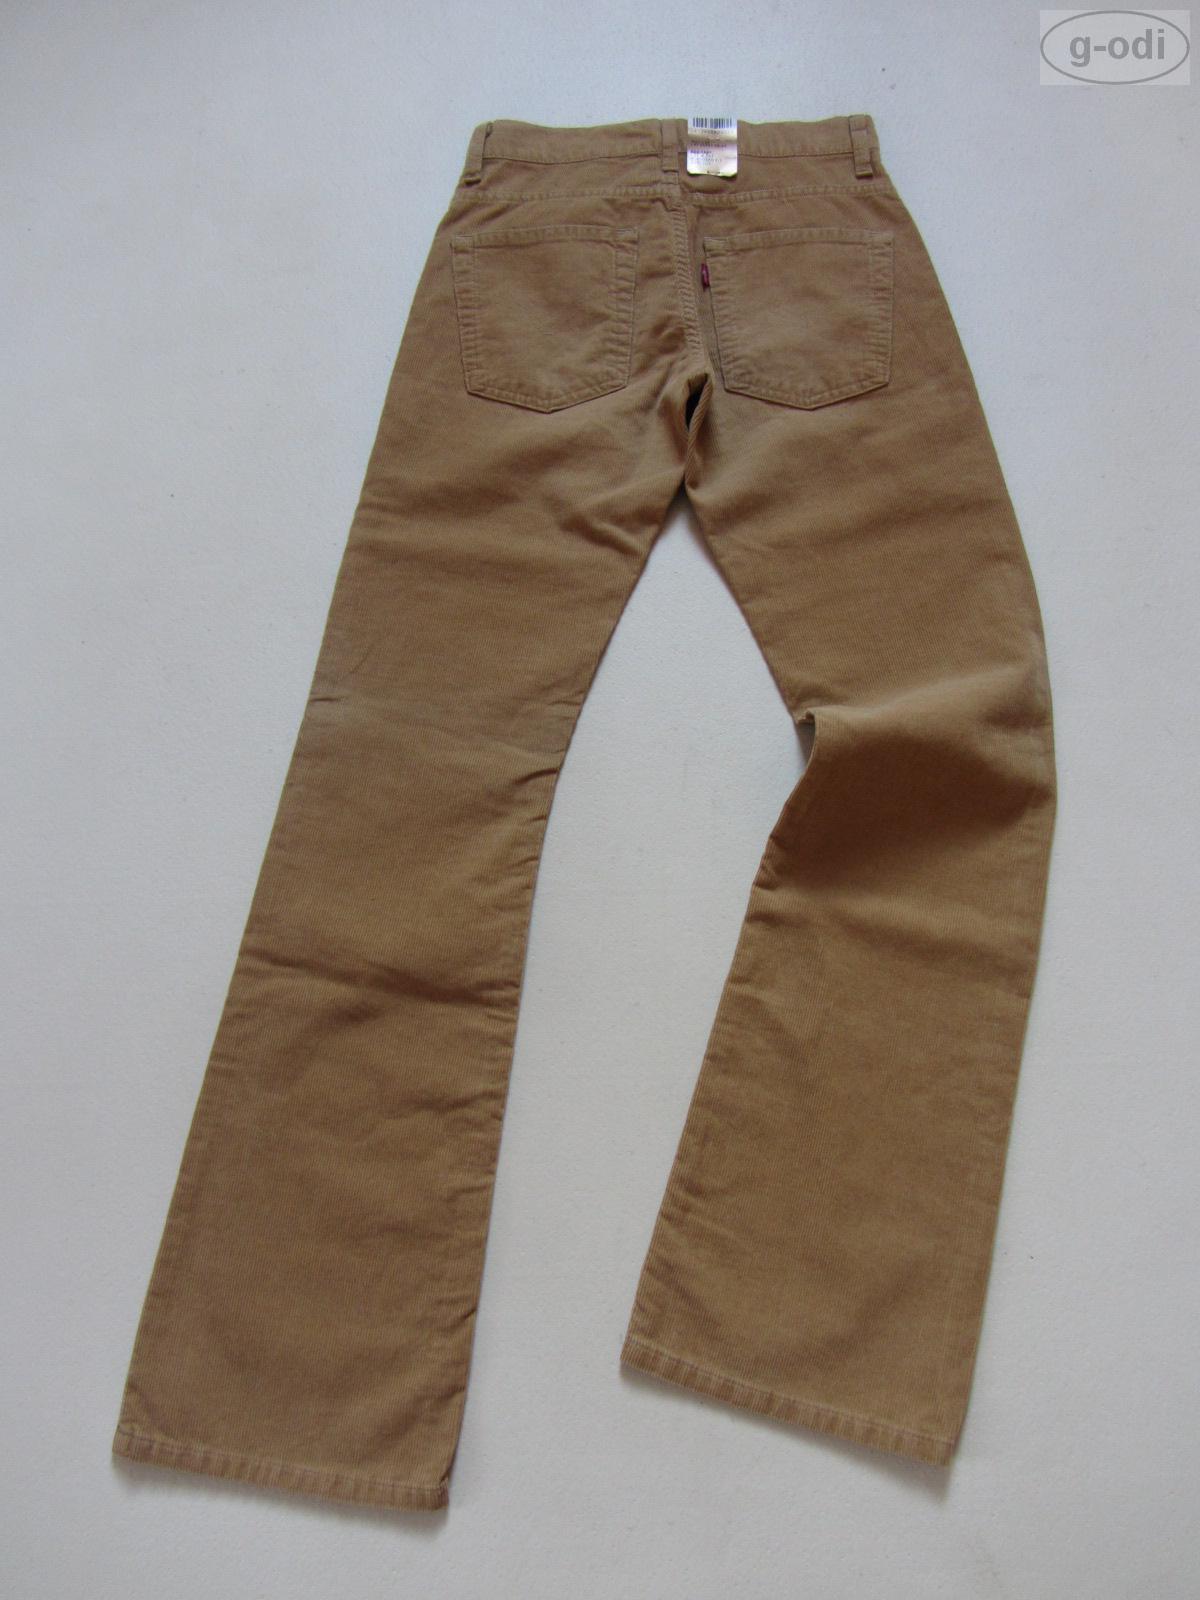 Levis® Levis Jeans 507 Kordhose Hose 27/ 32 Kord, NEU W27/L32